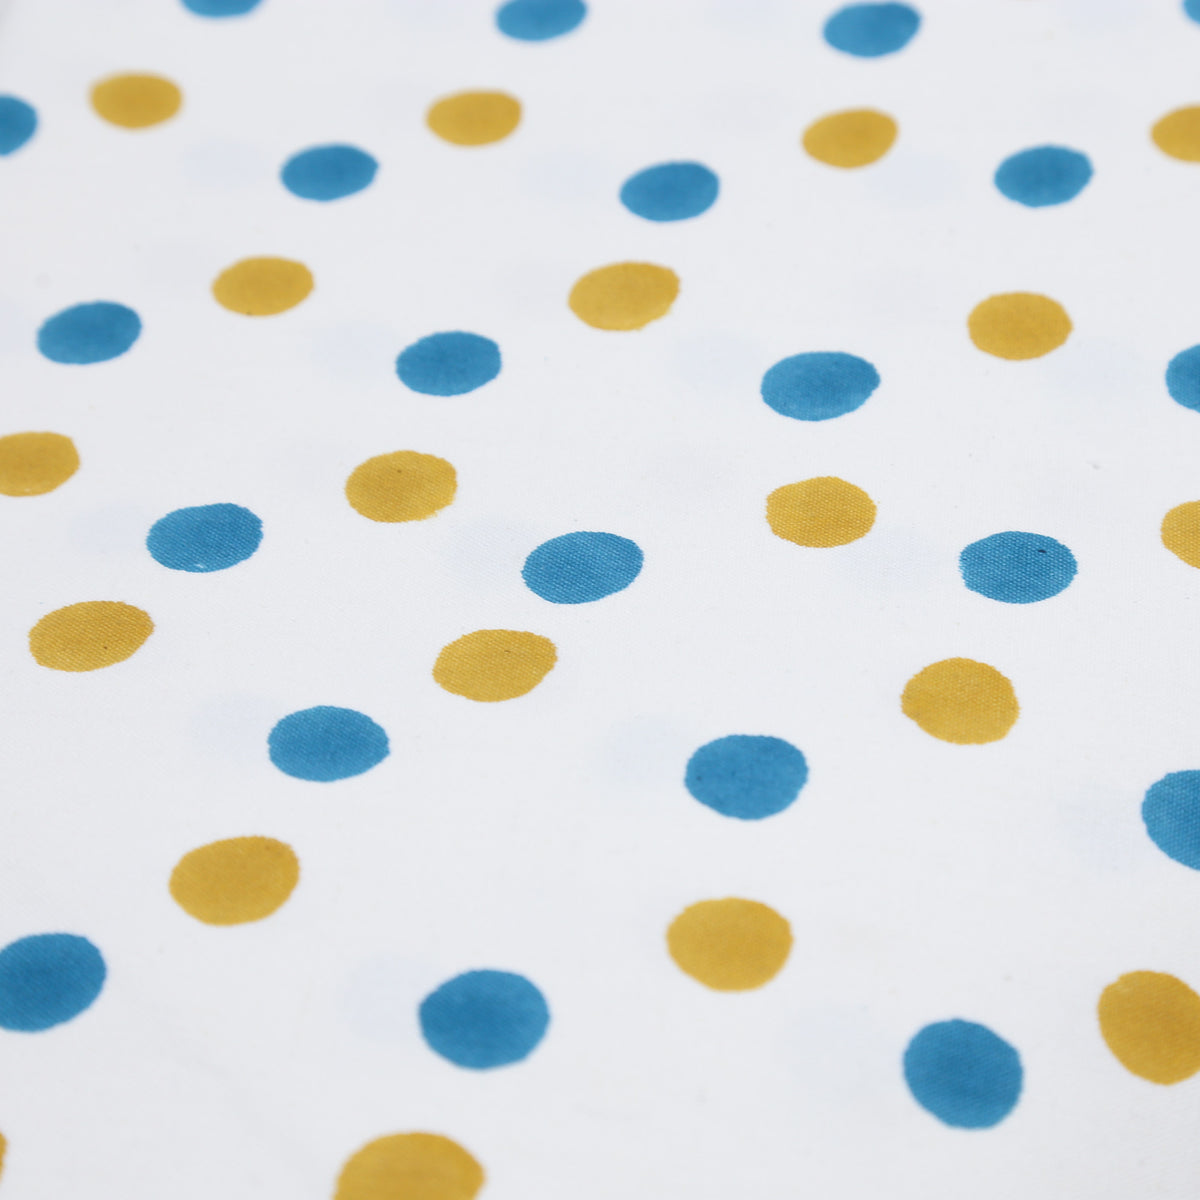 Baumwoll-Canvas-Stoff - weiße Basis blau und gelb gepunktet